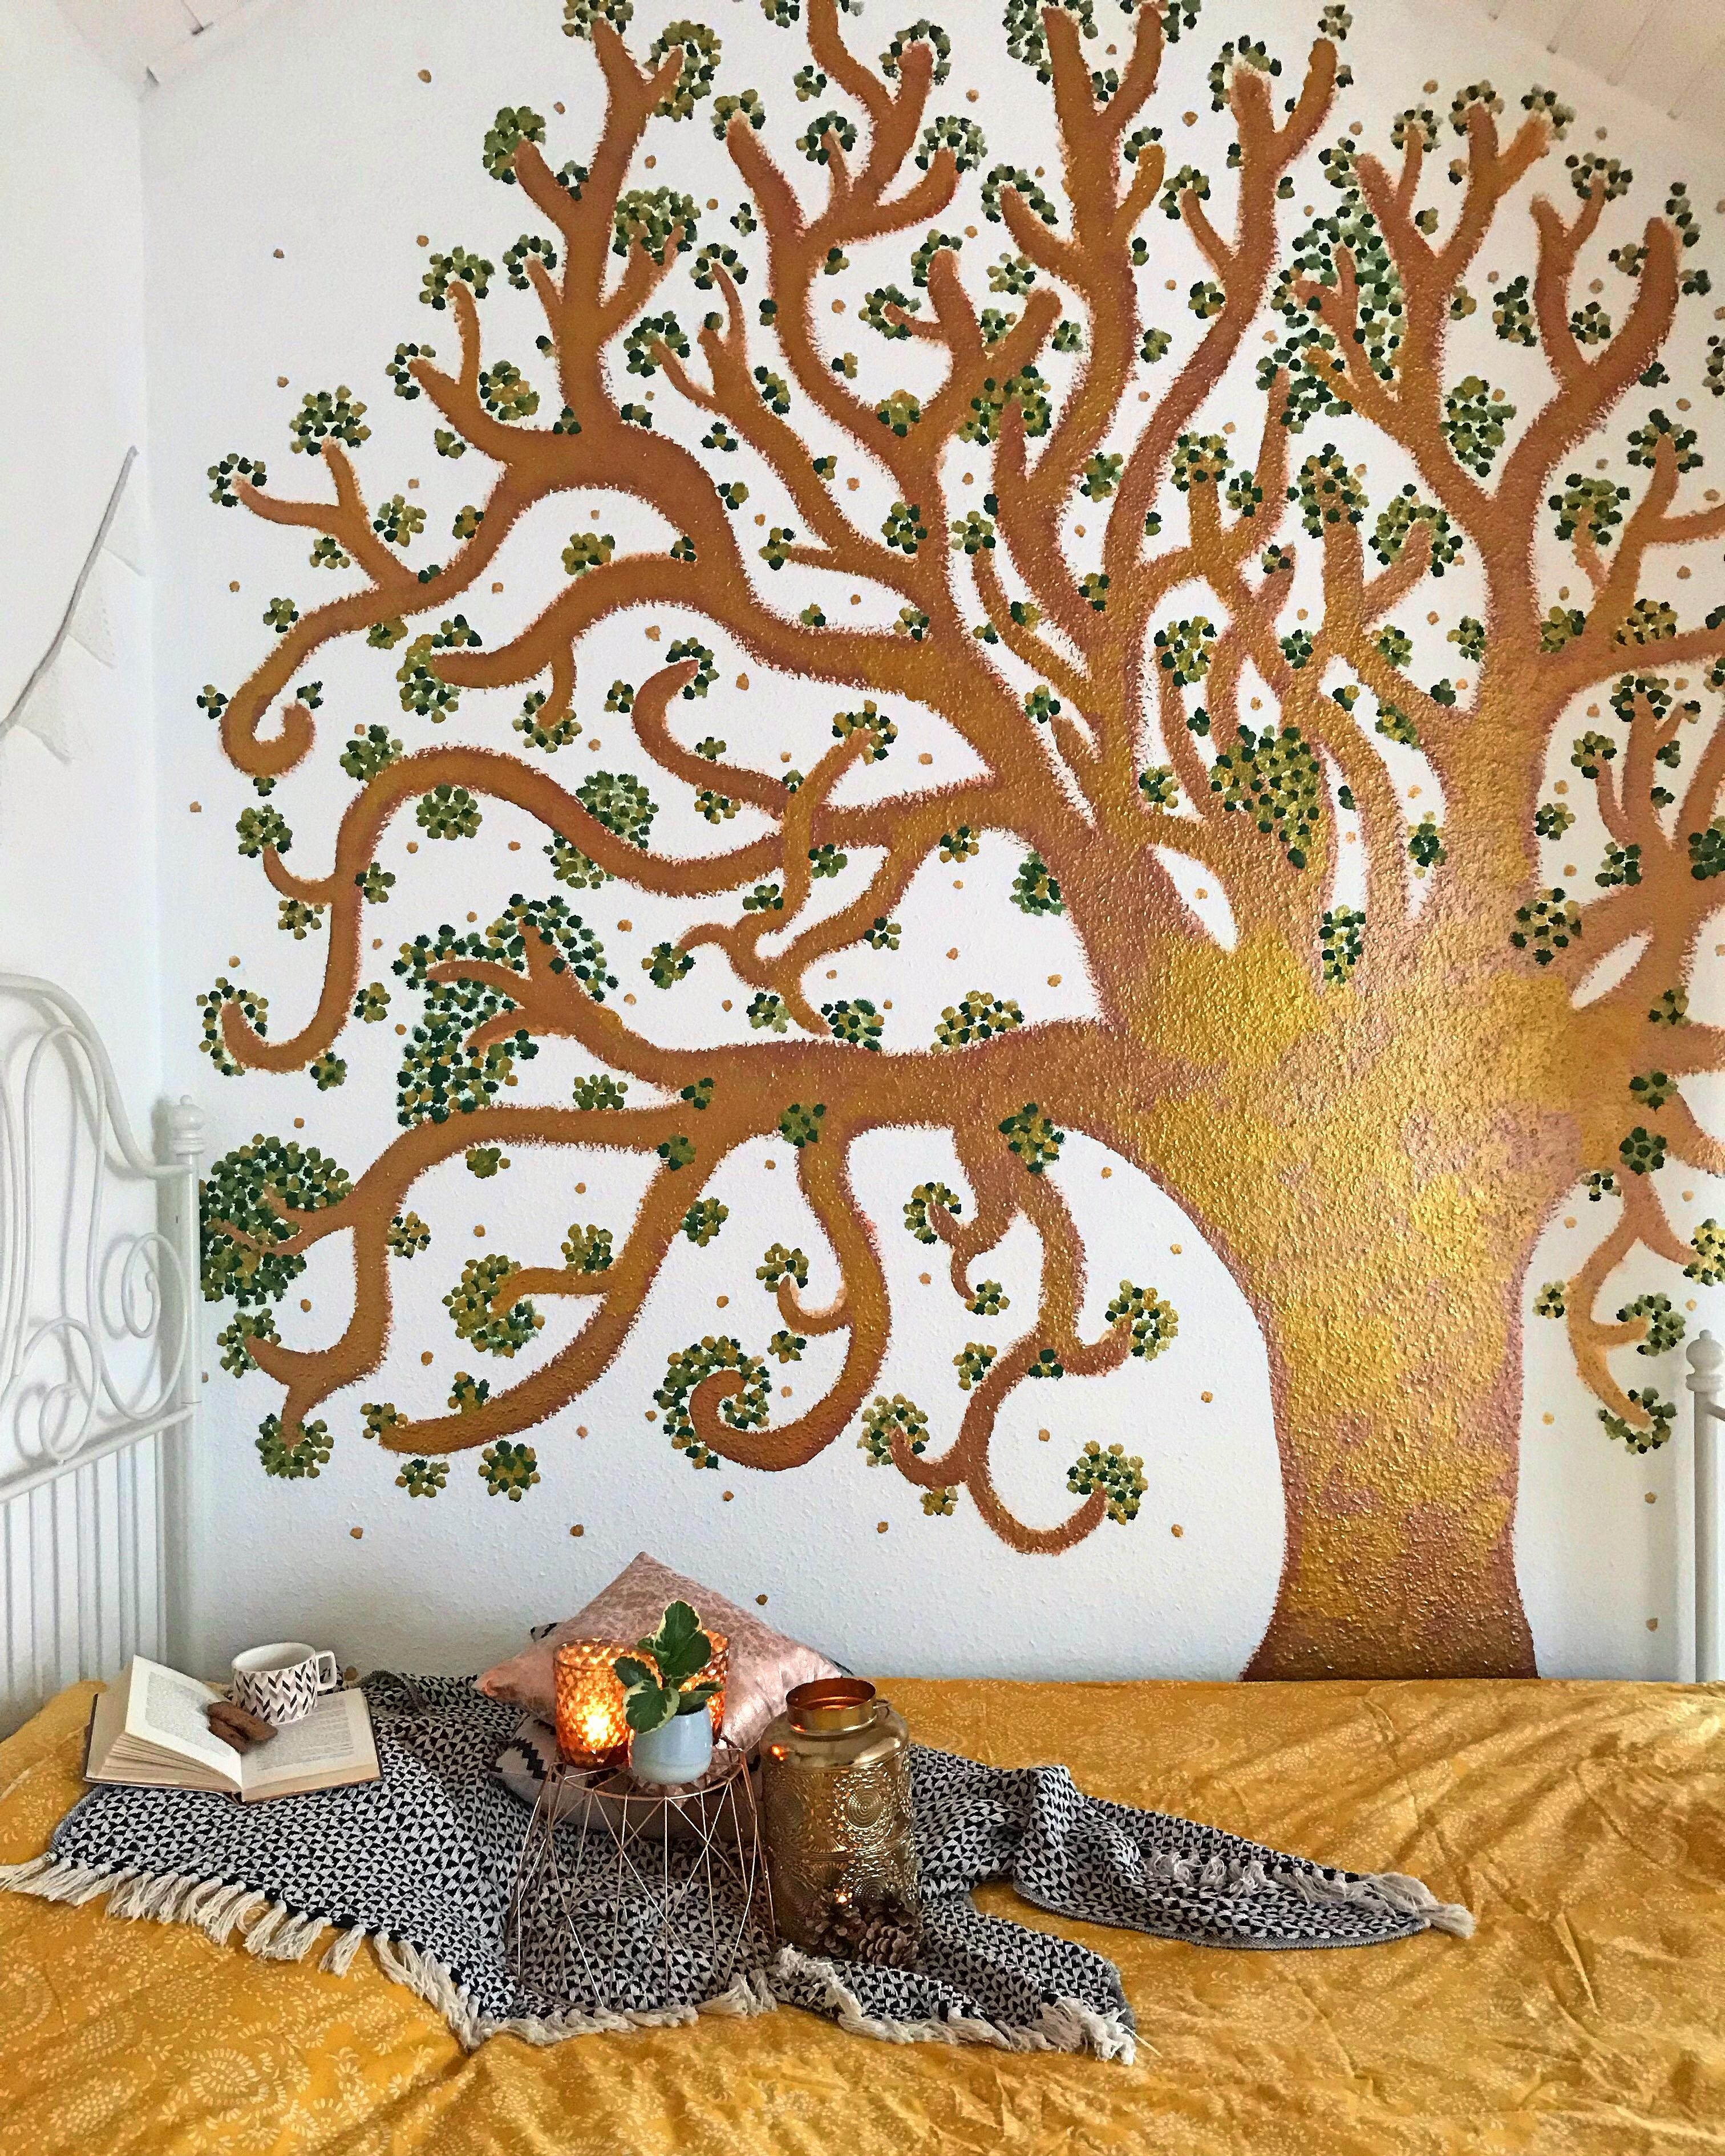 Mein Wunsch-Traum-Baum 🍂✨🍂
#diyhomedecor #diyweek #diydeko #bedroomdecor #wallpainting